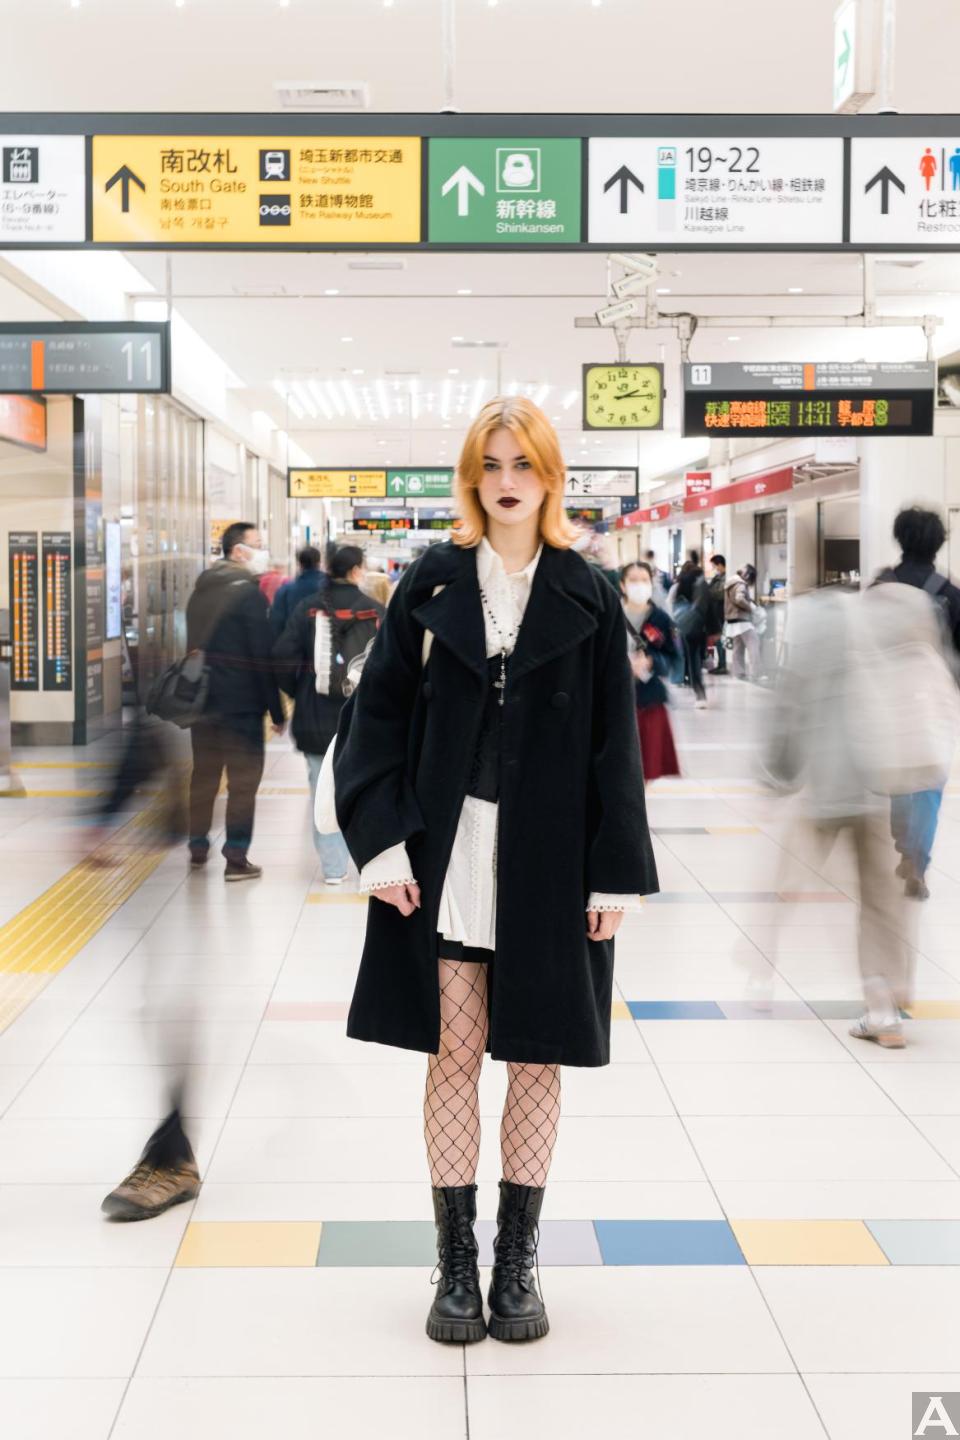 東京外国人モデル事務所アクアモデル所属の白人モデルのアリエル